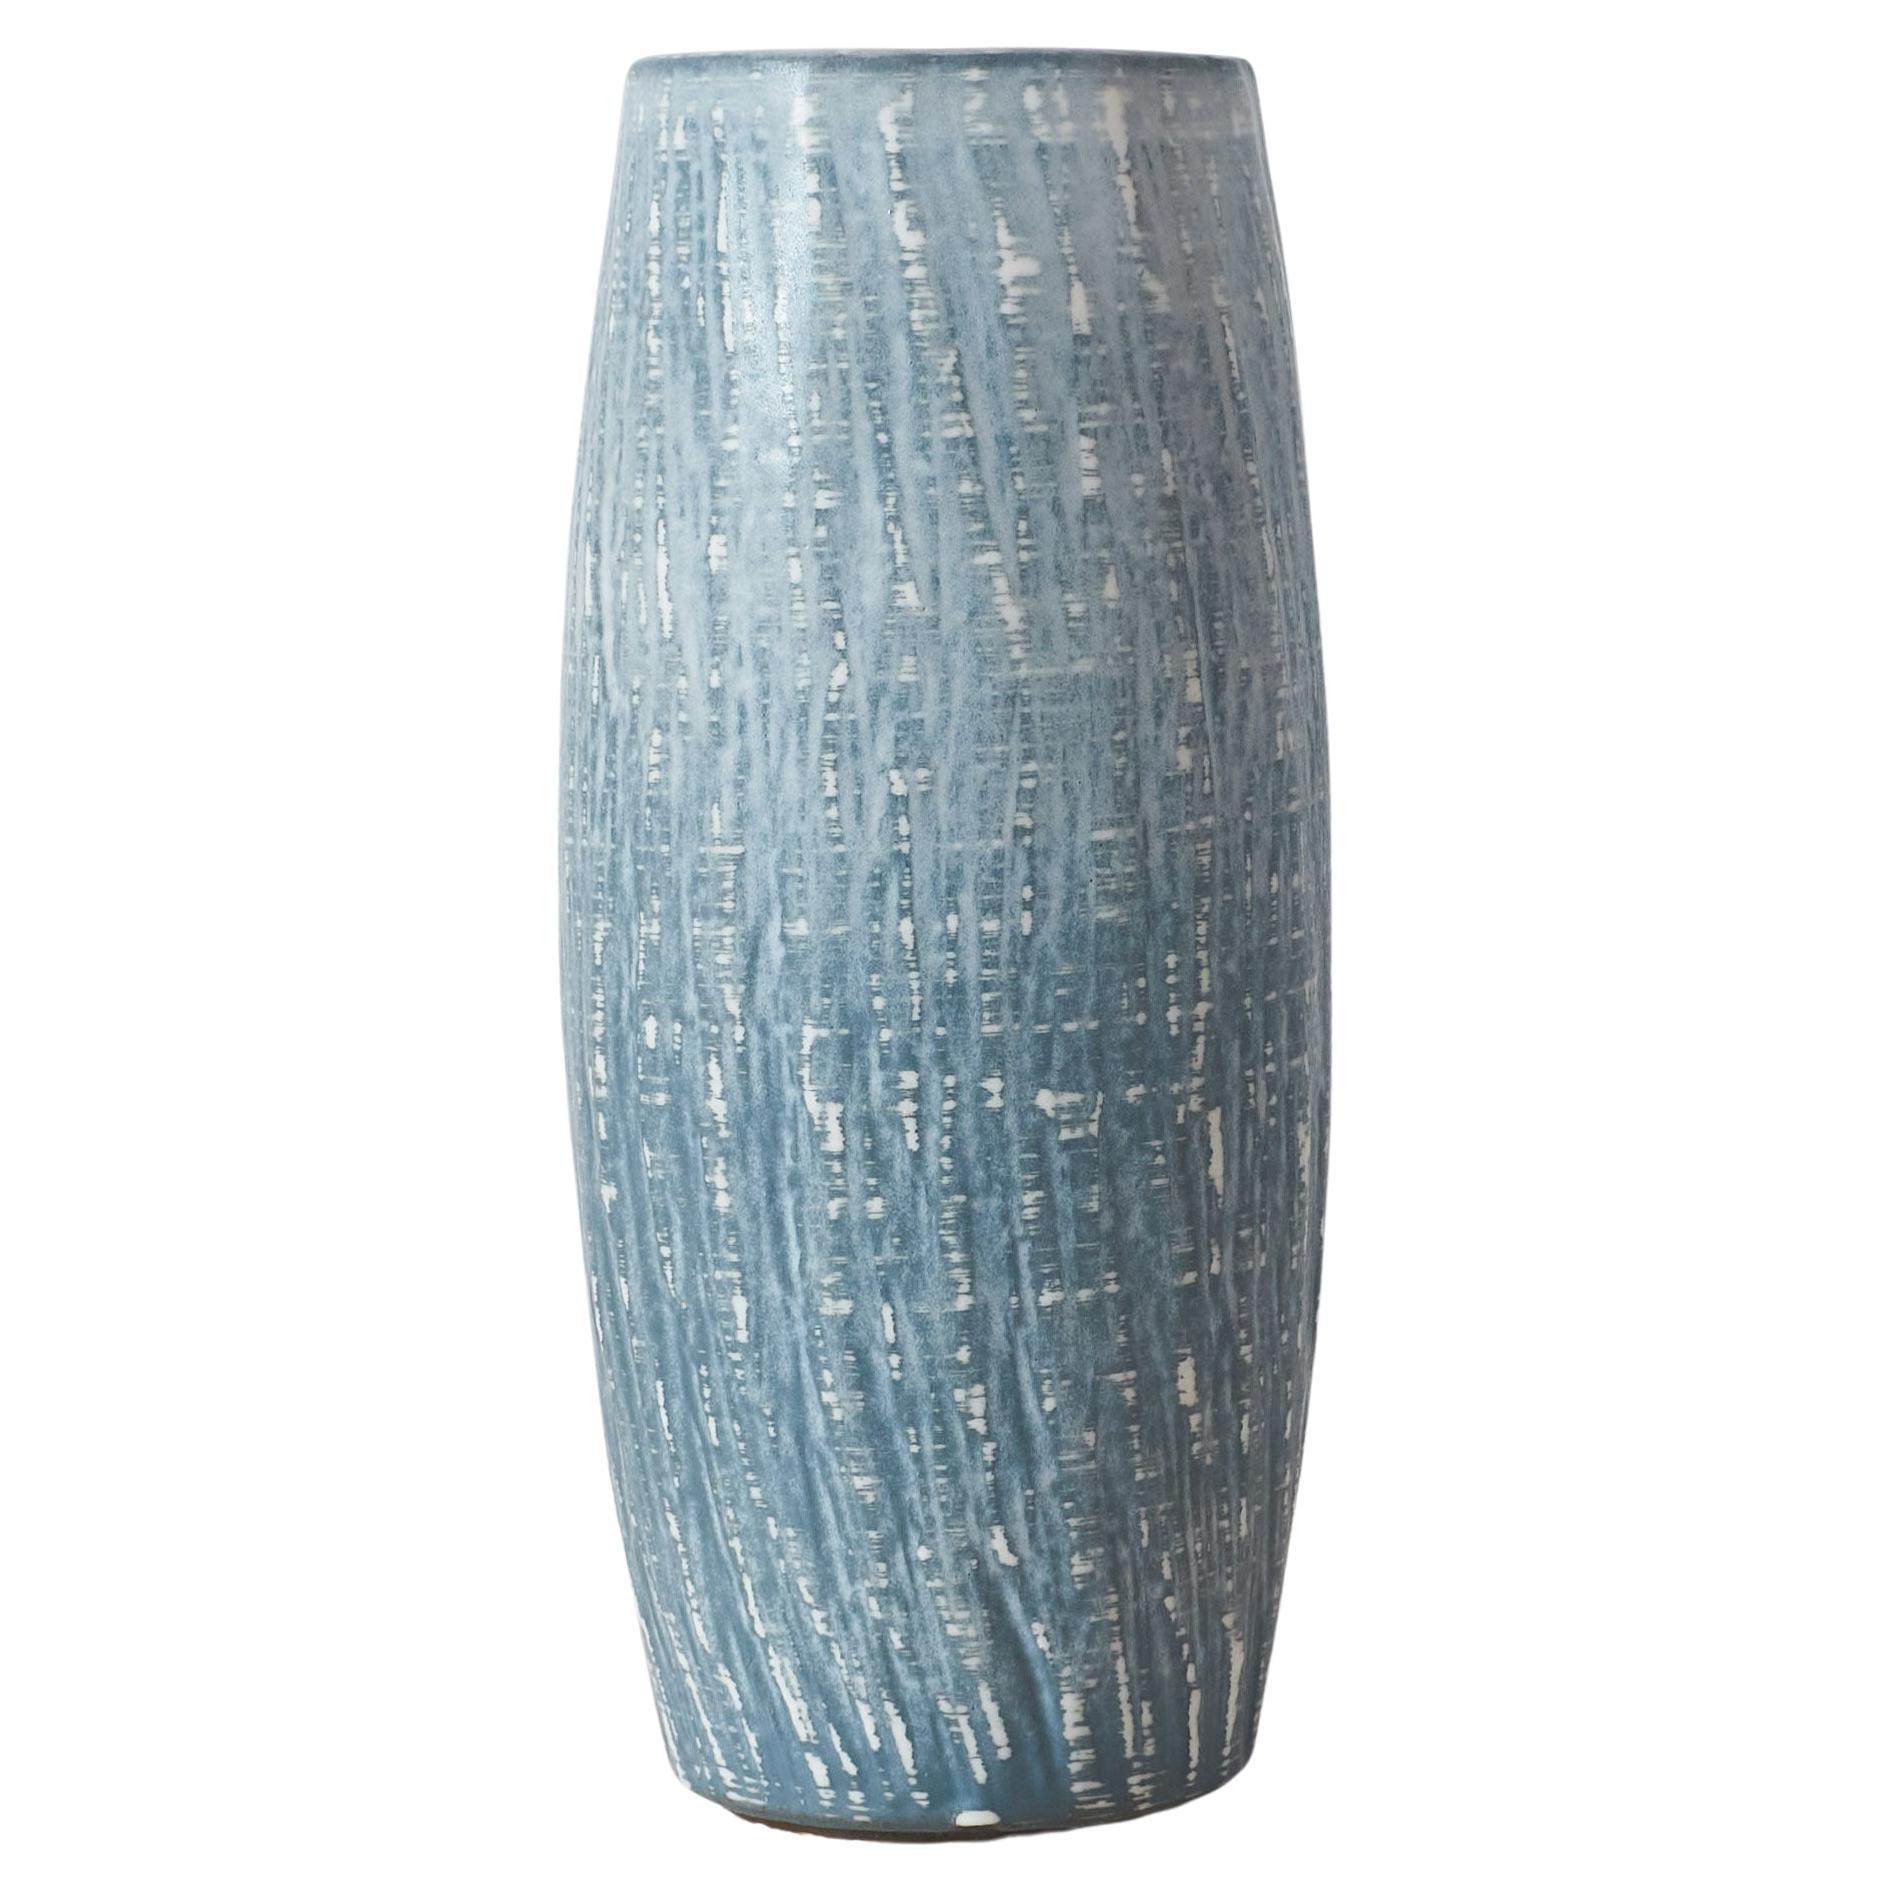 Large Rebus Series Vase by Gunnar Nylund